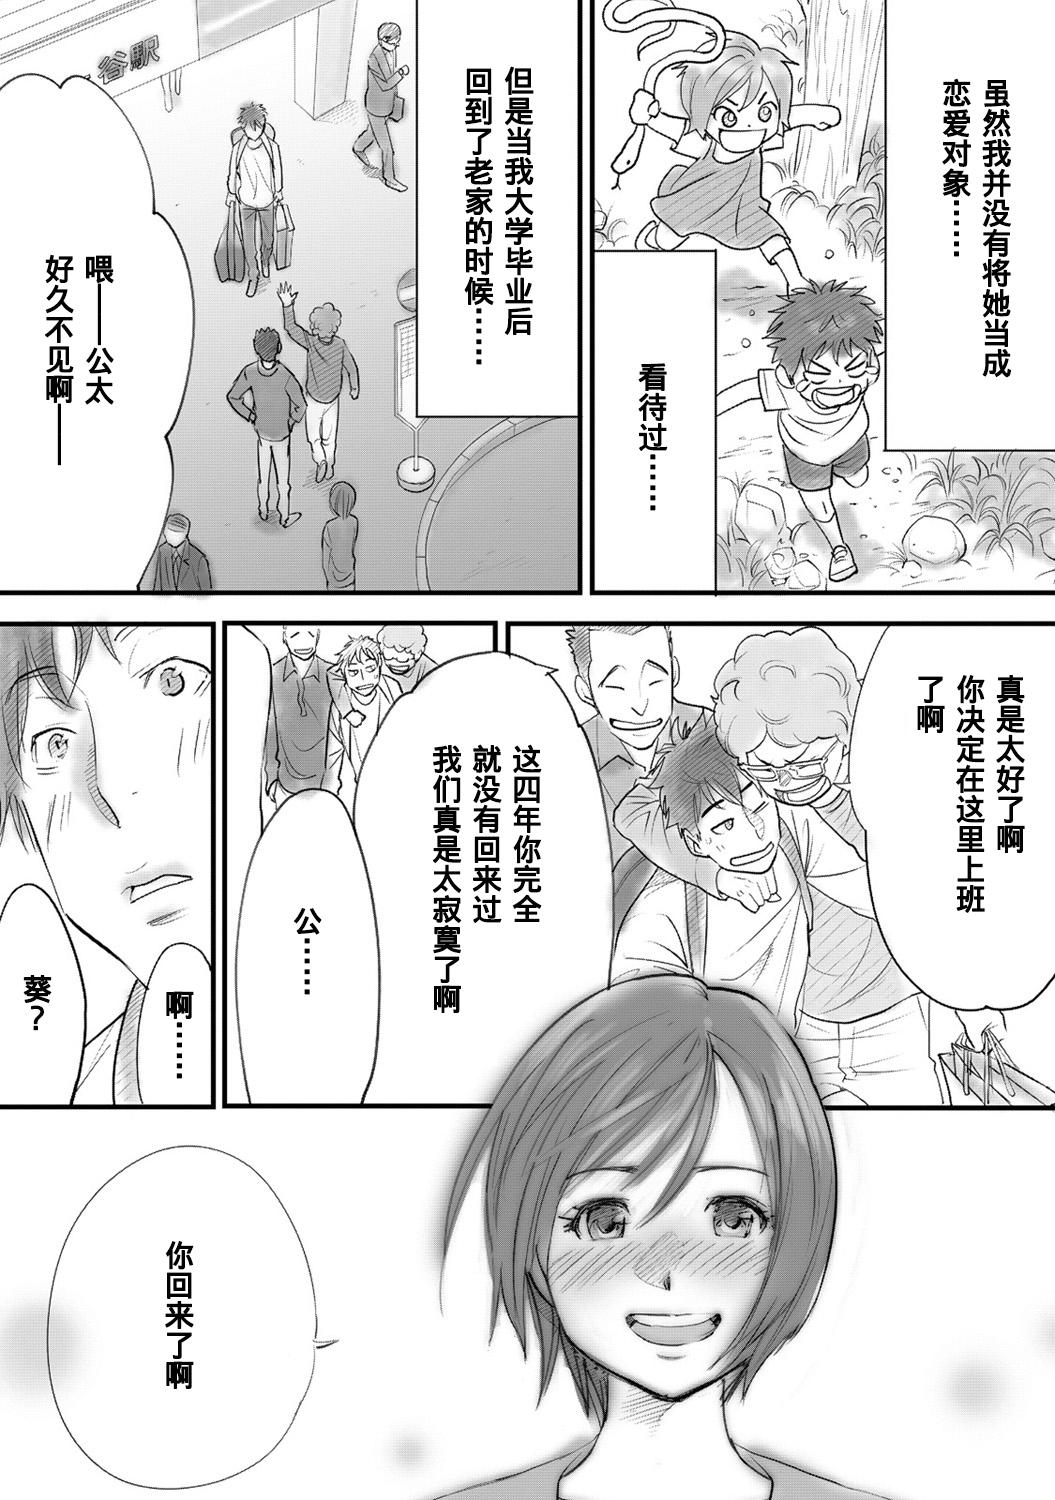 Mamando Koukan ─ Ano Toki… Ano Musume ♀ Toitsu ♂ Tetara ─ 1-3 Whipping - Page 7